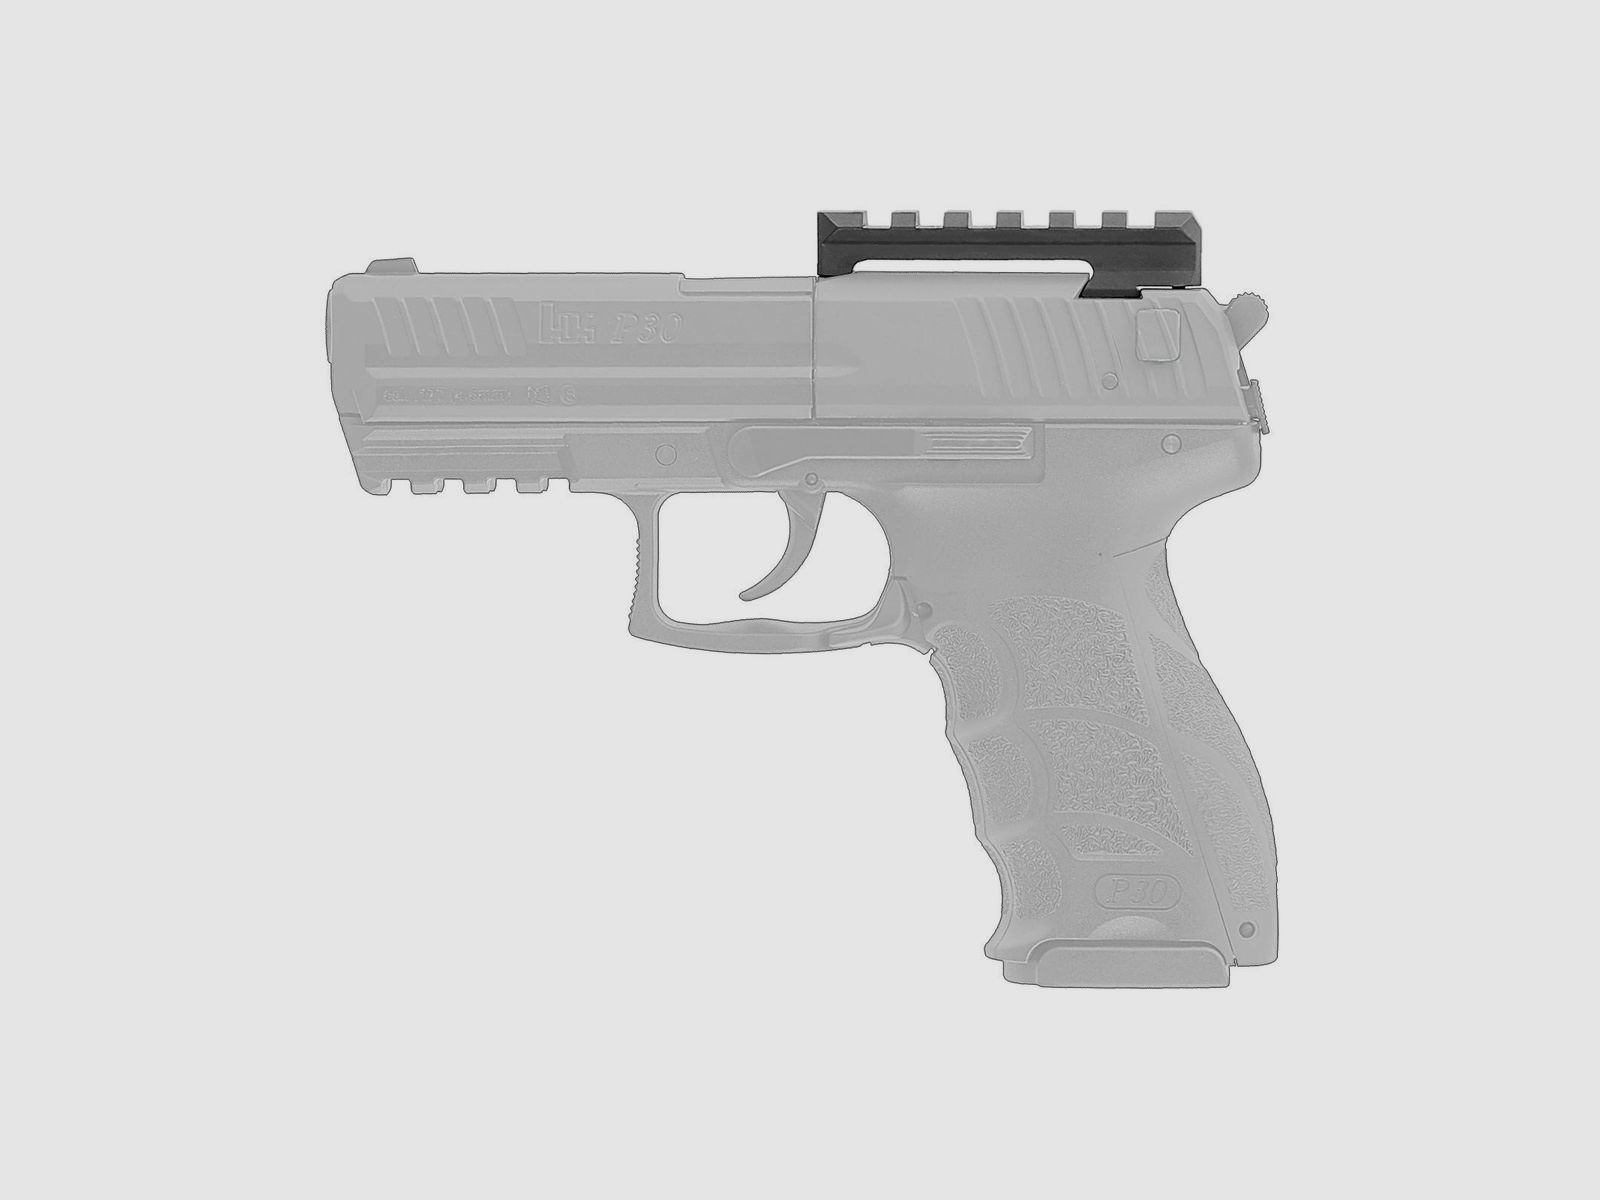 Heckler & Koch Picatinnyschiene für P30 4,5 mm BB Co2-Pistole